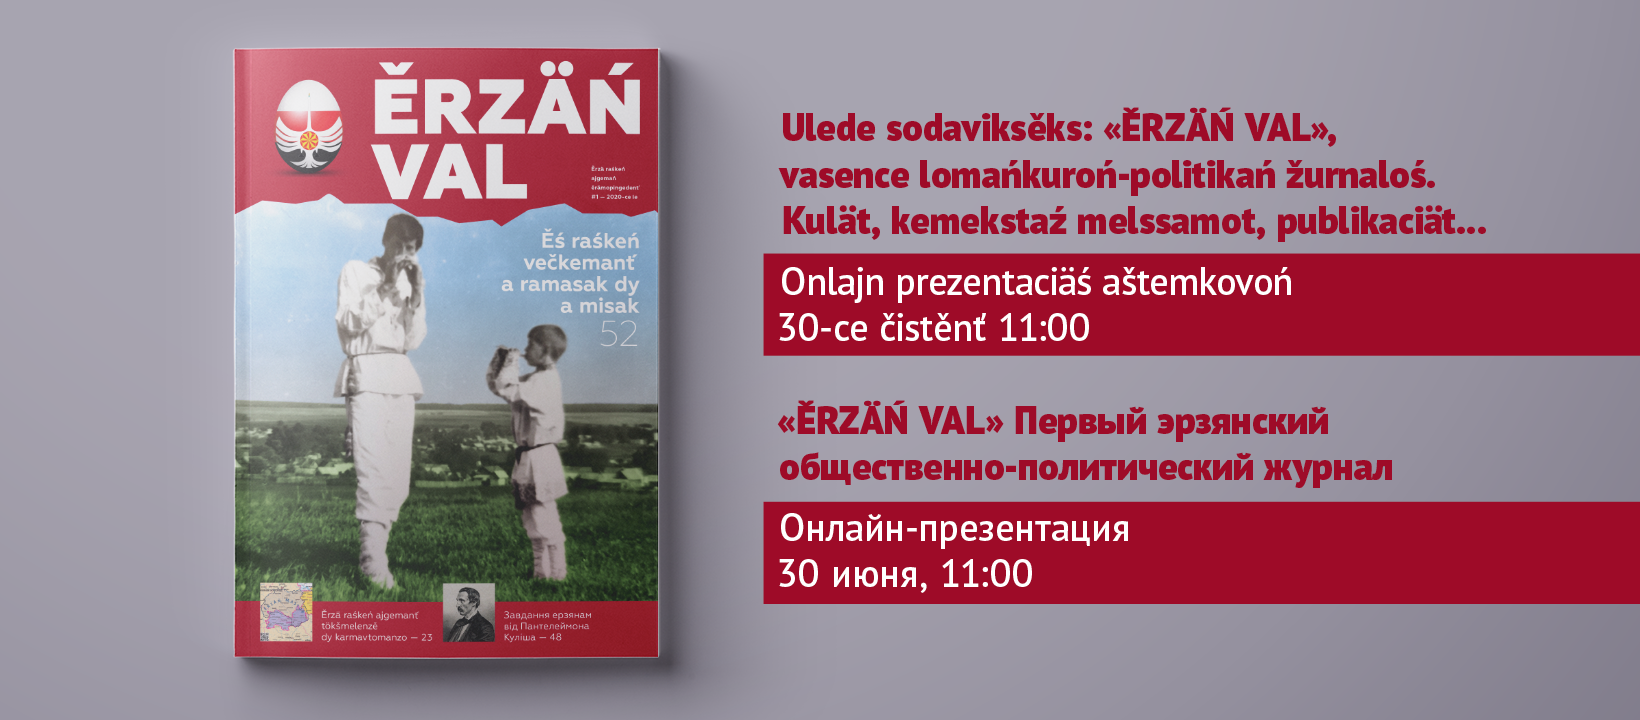 В Украине презентуют новый эрзянский журнал